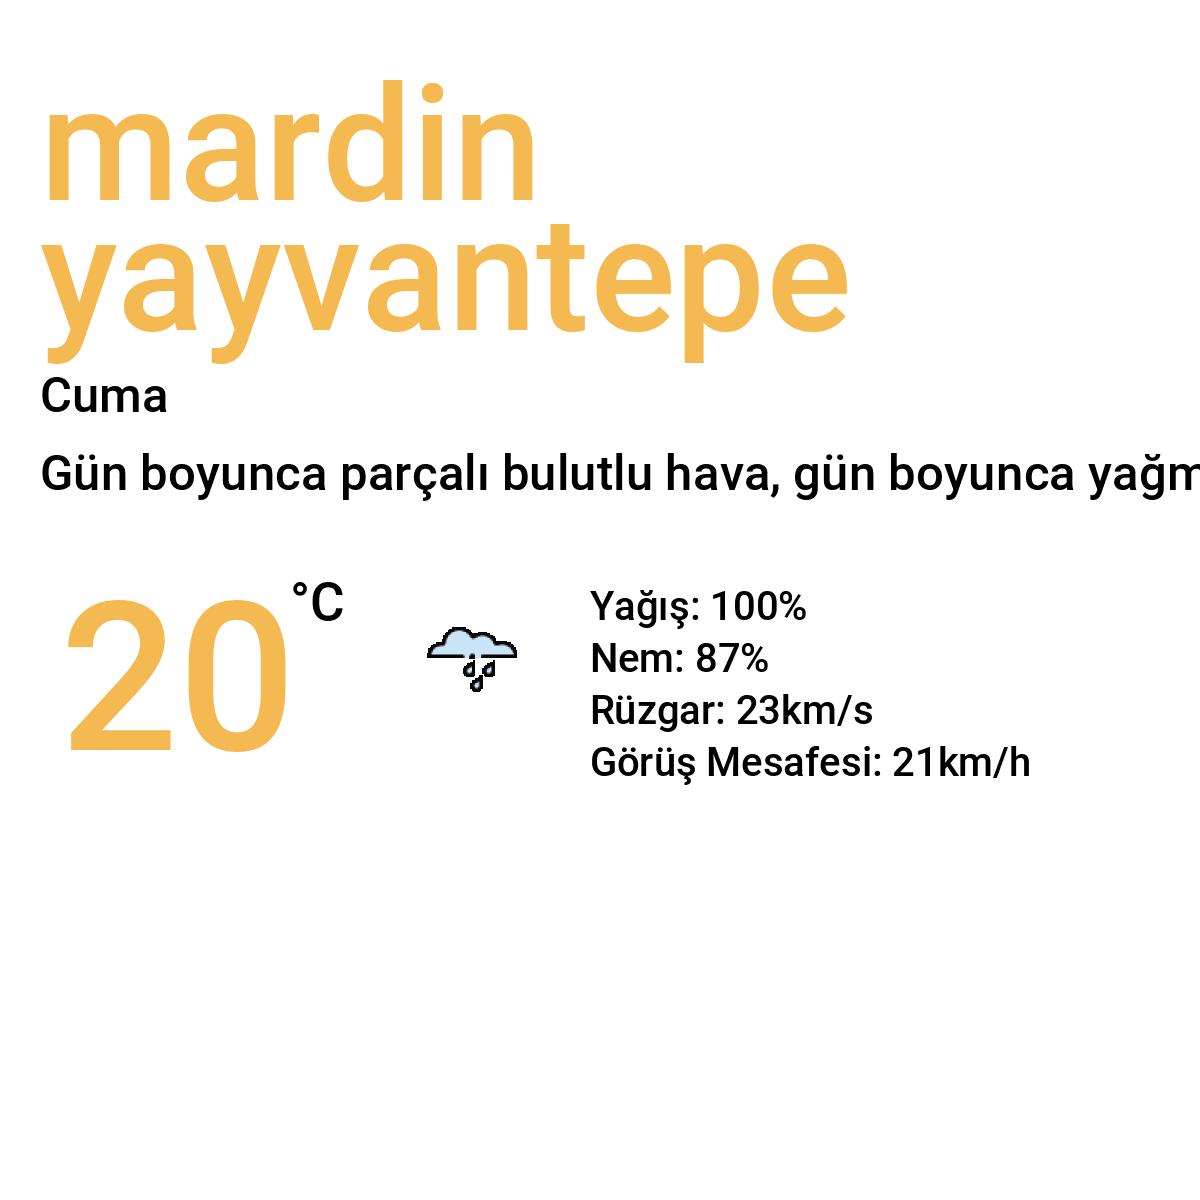 Mardin Yayvantepe Bugün Hava Durumu Tahmini